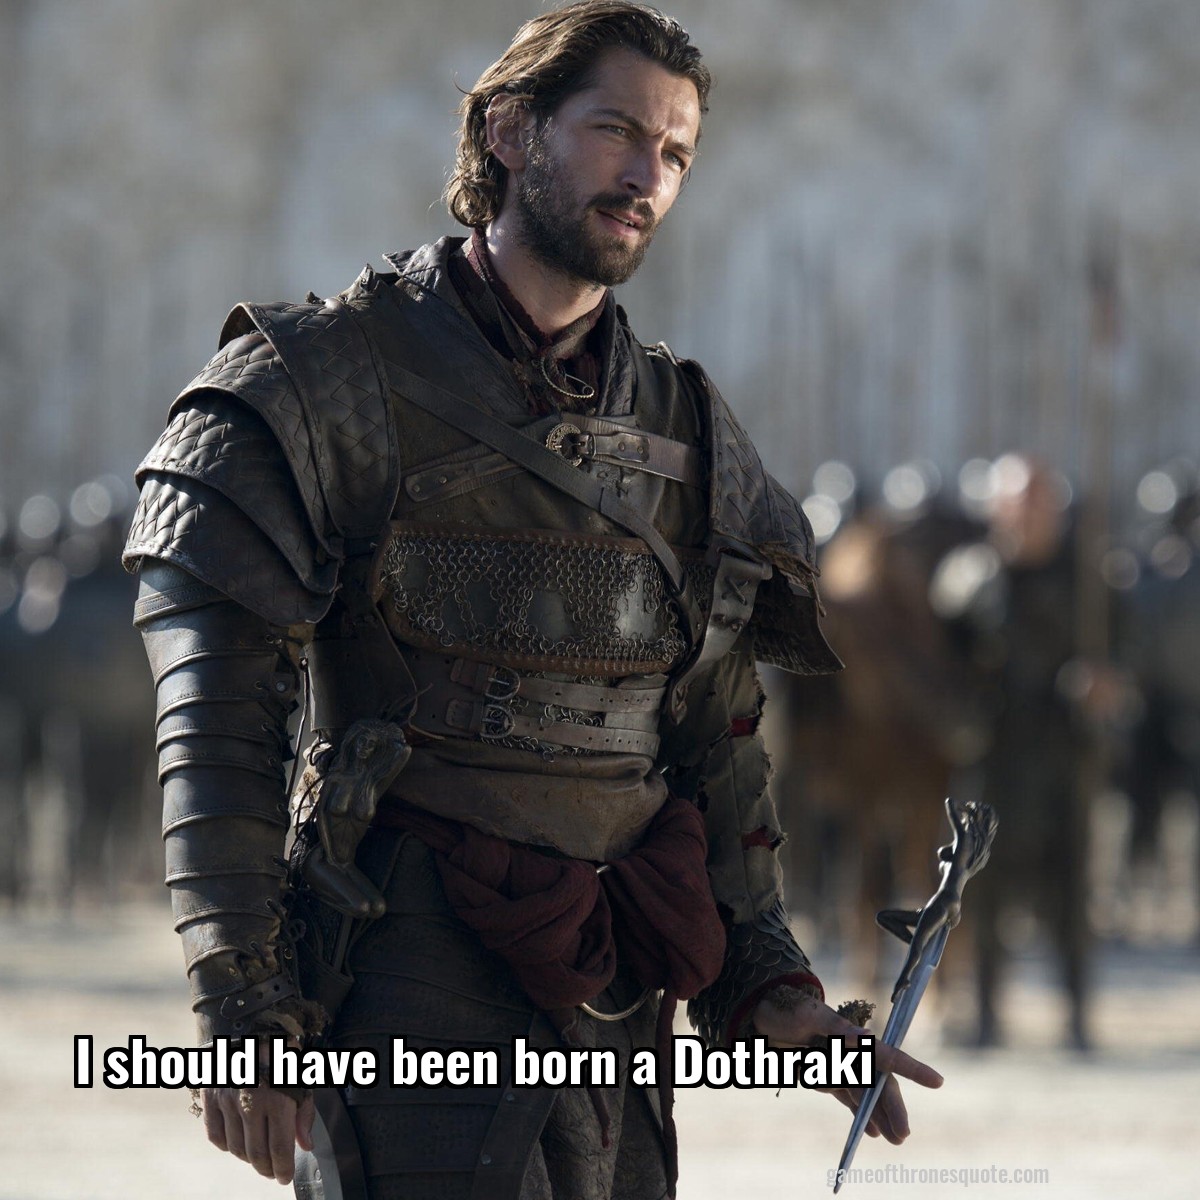 I should have been born a Dothraki